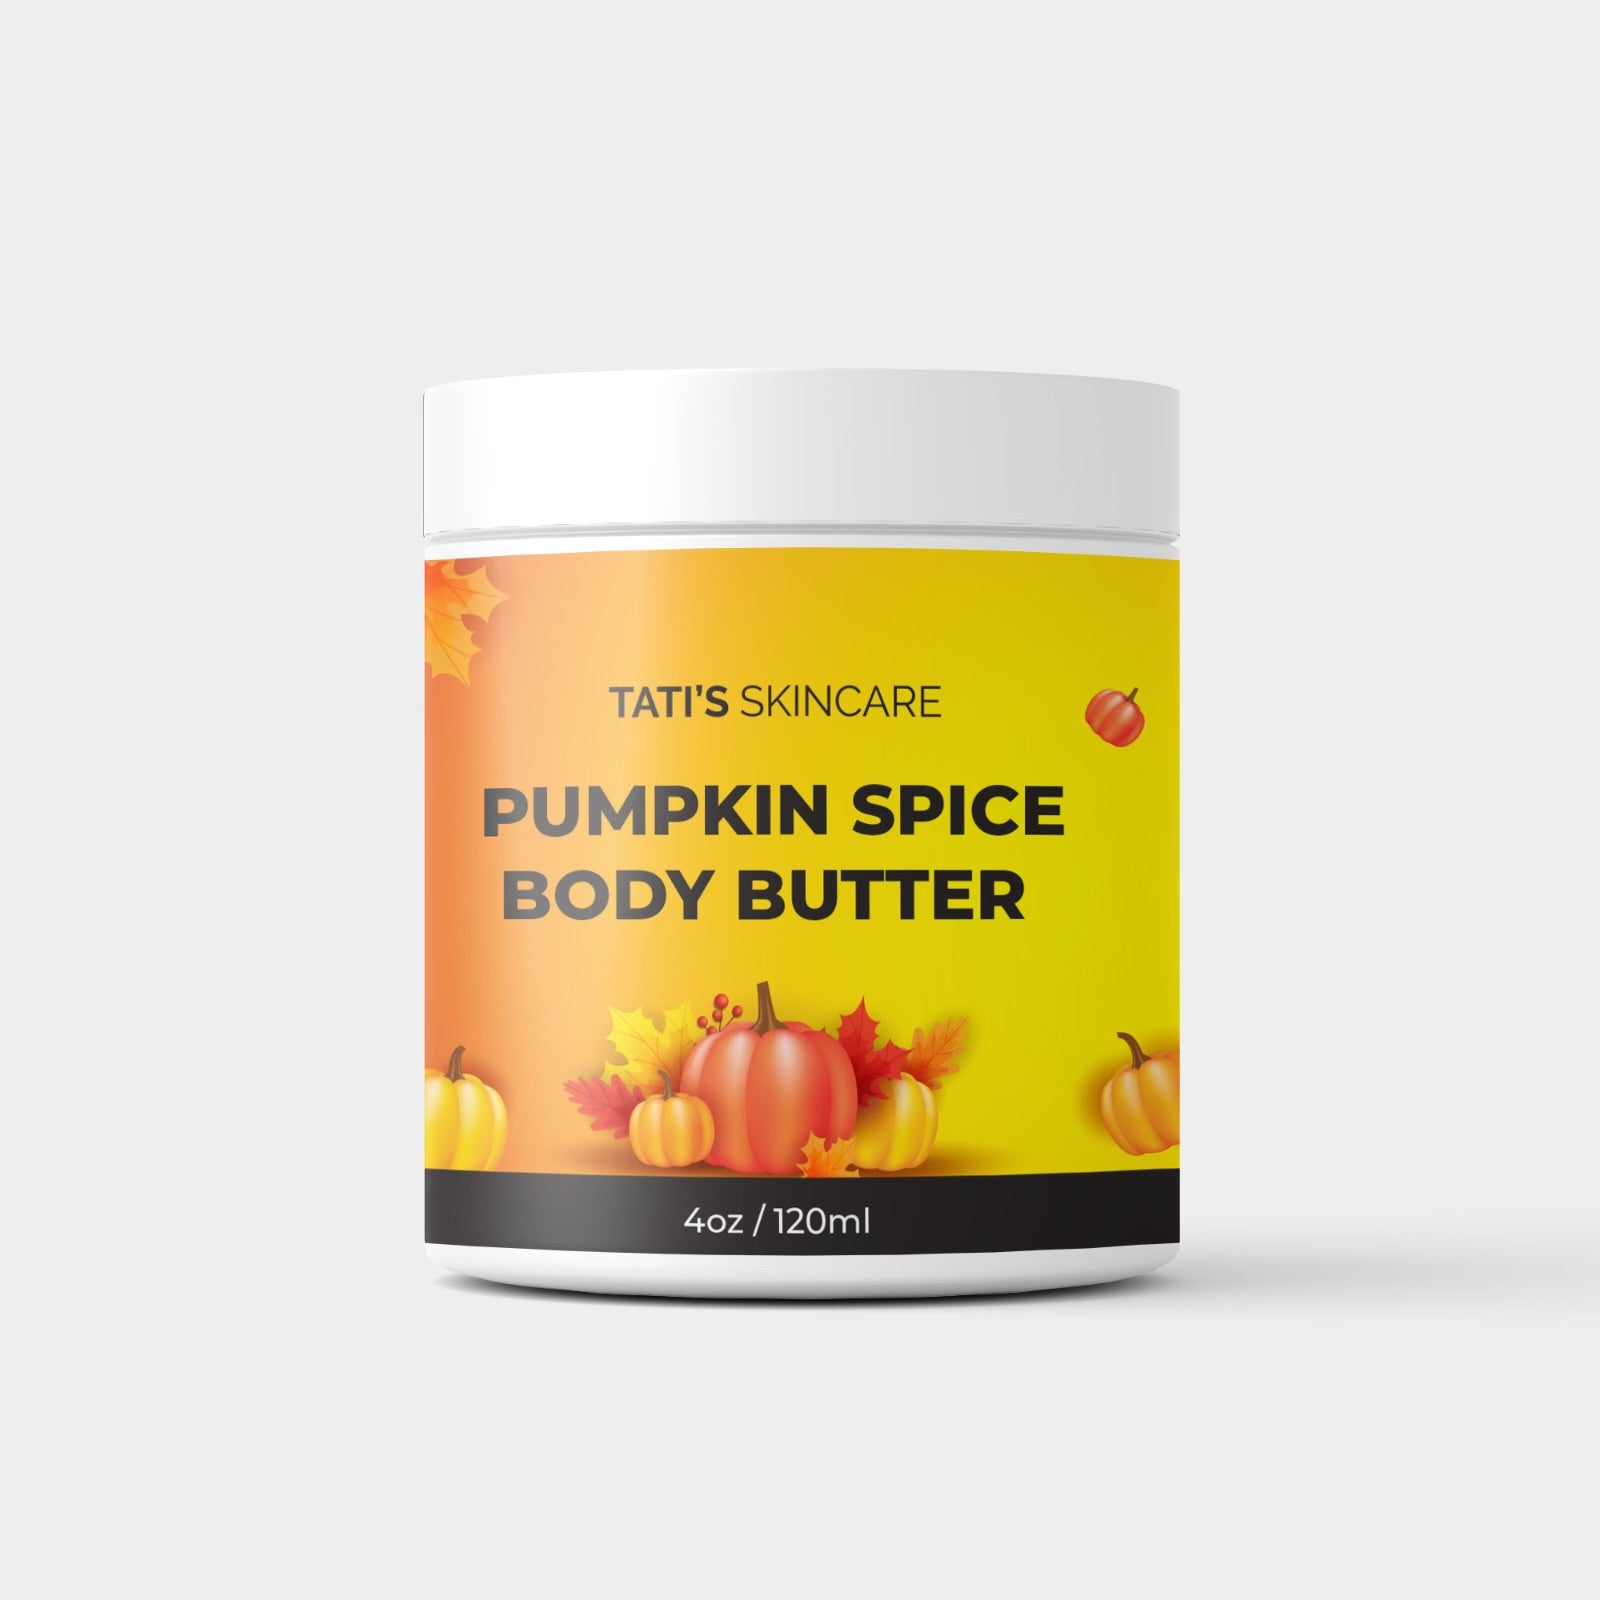 Pumpkin Spice Body Butter